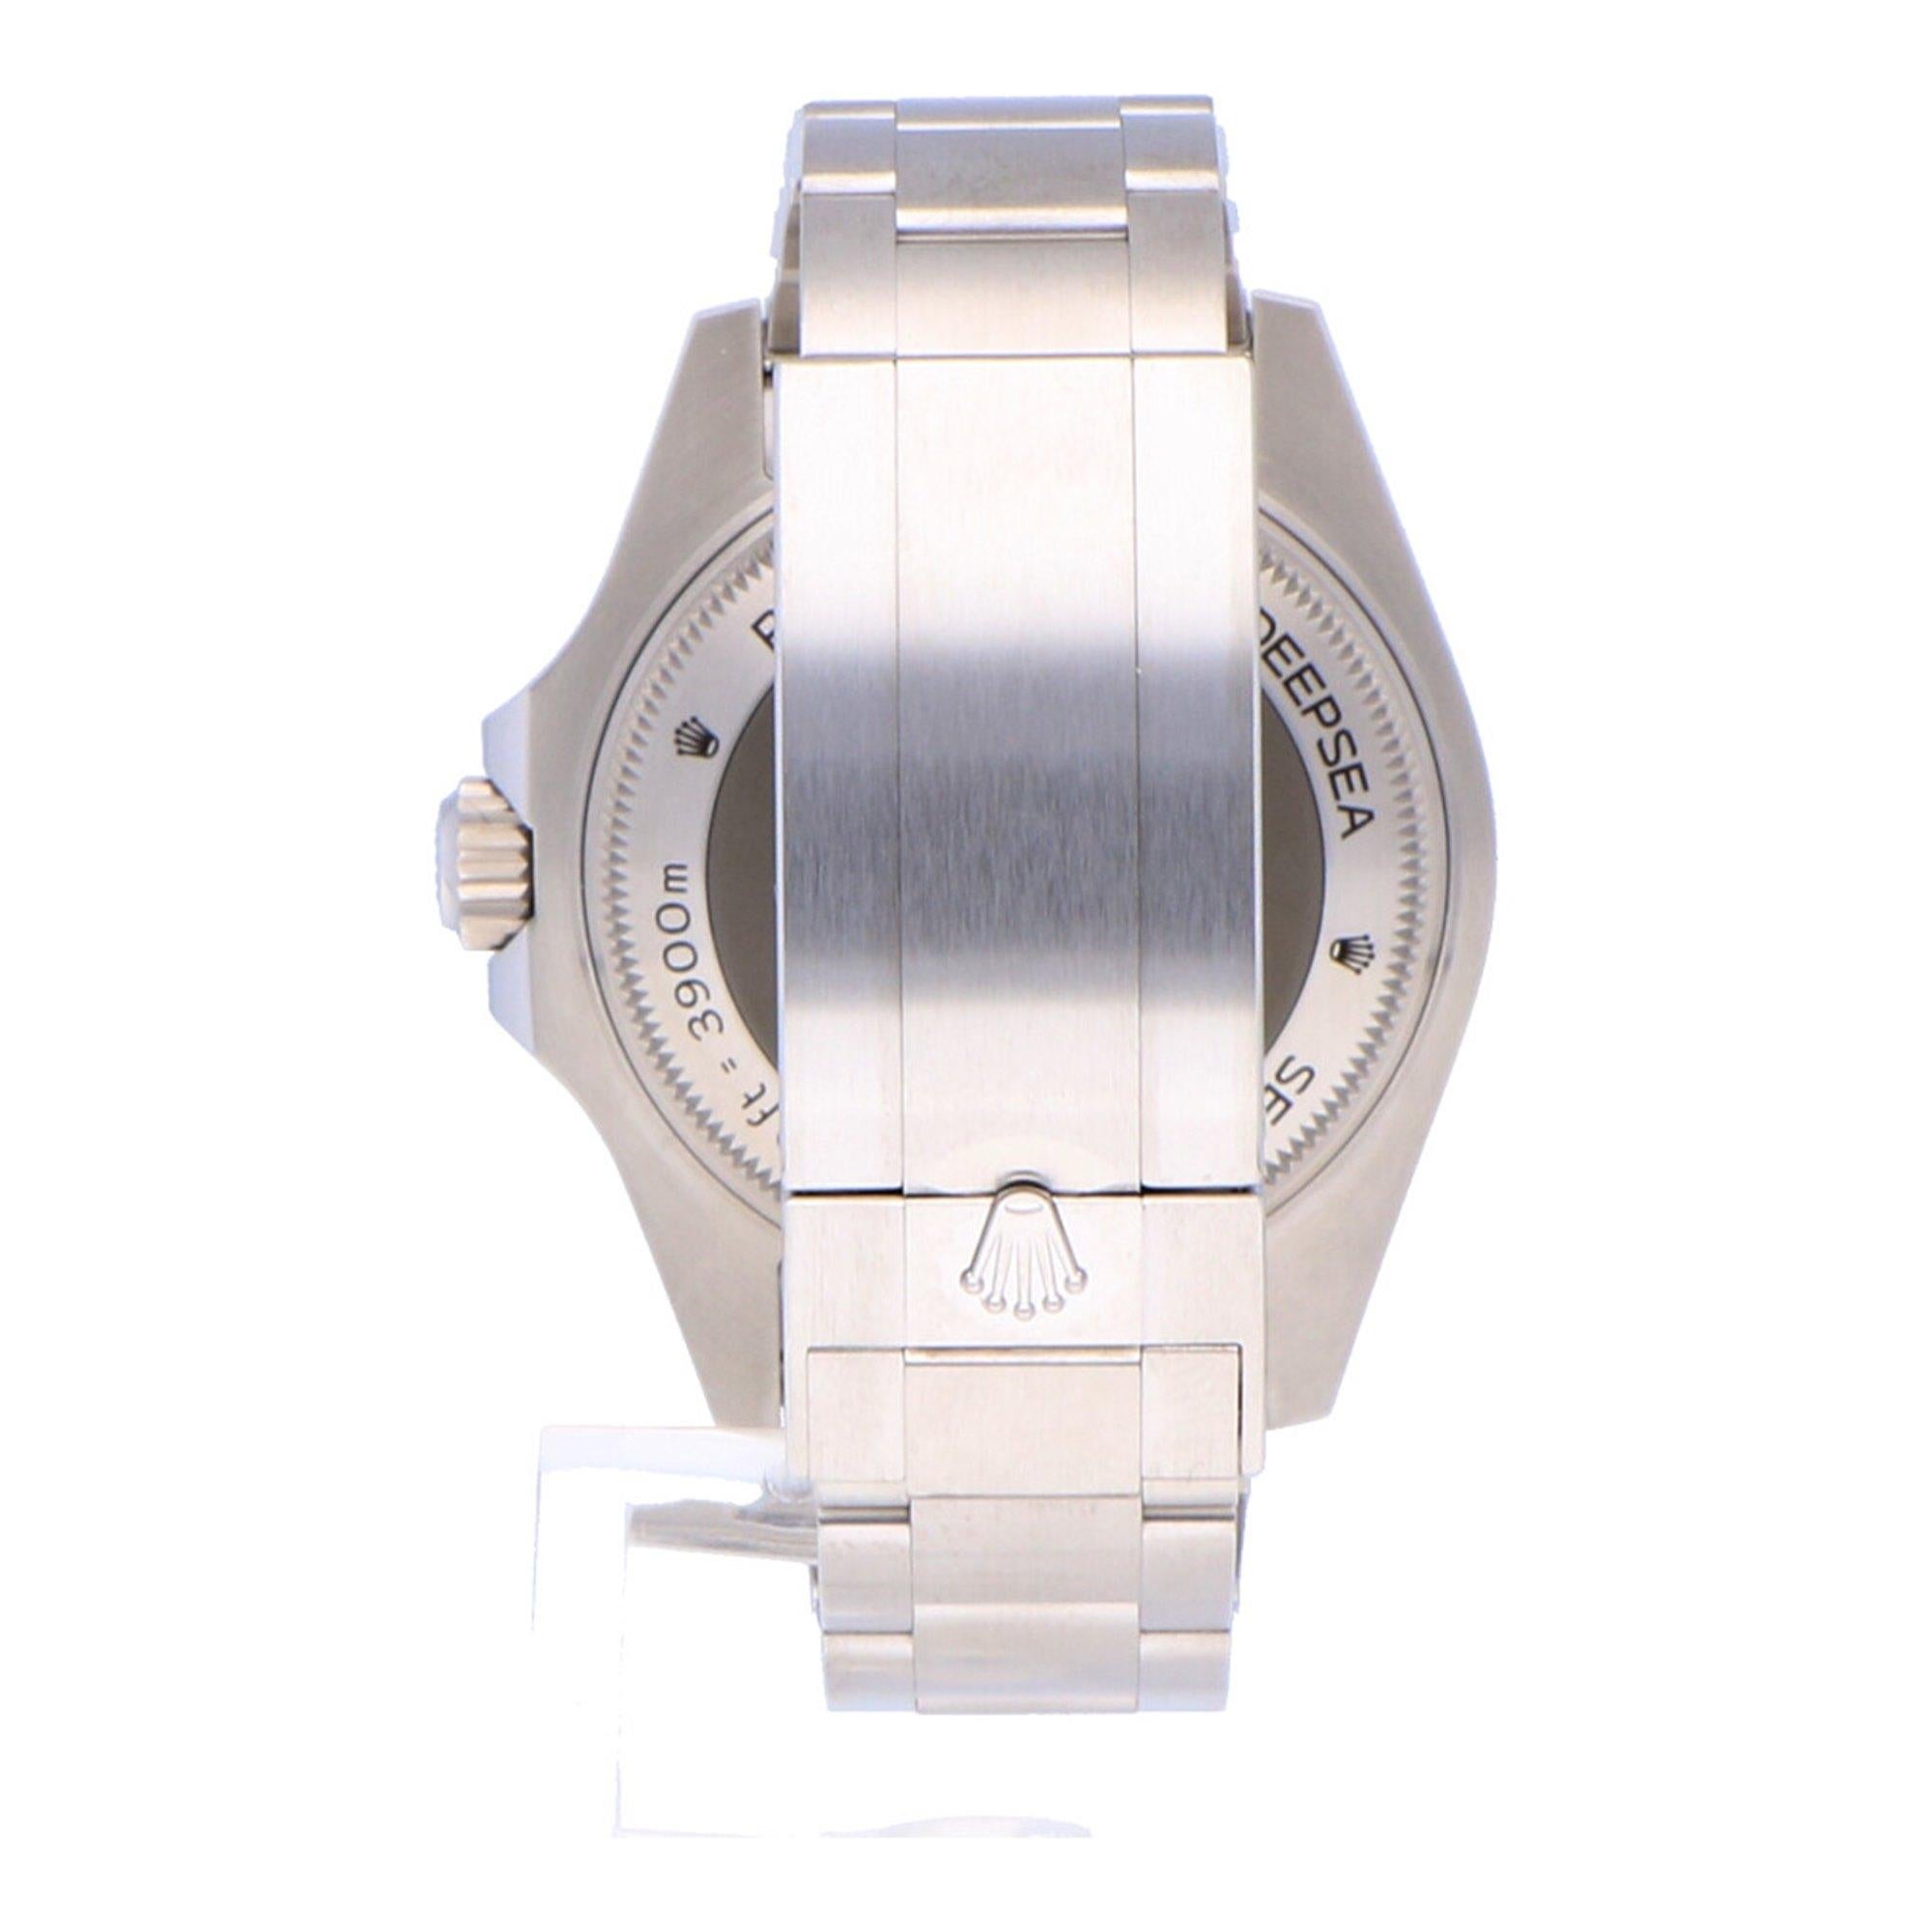 Pre-Owned Rolex Sea-Dweller Deepsea Stainless Steel 126660 Watch 1